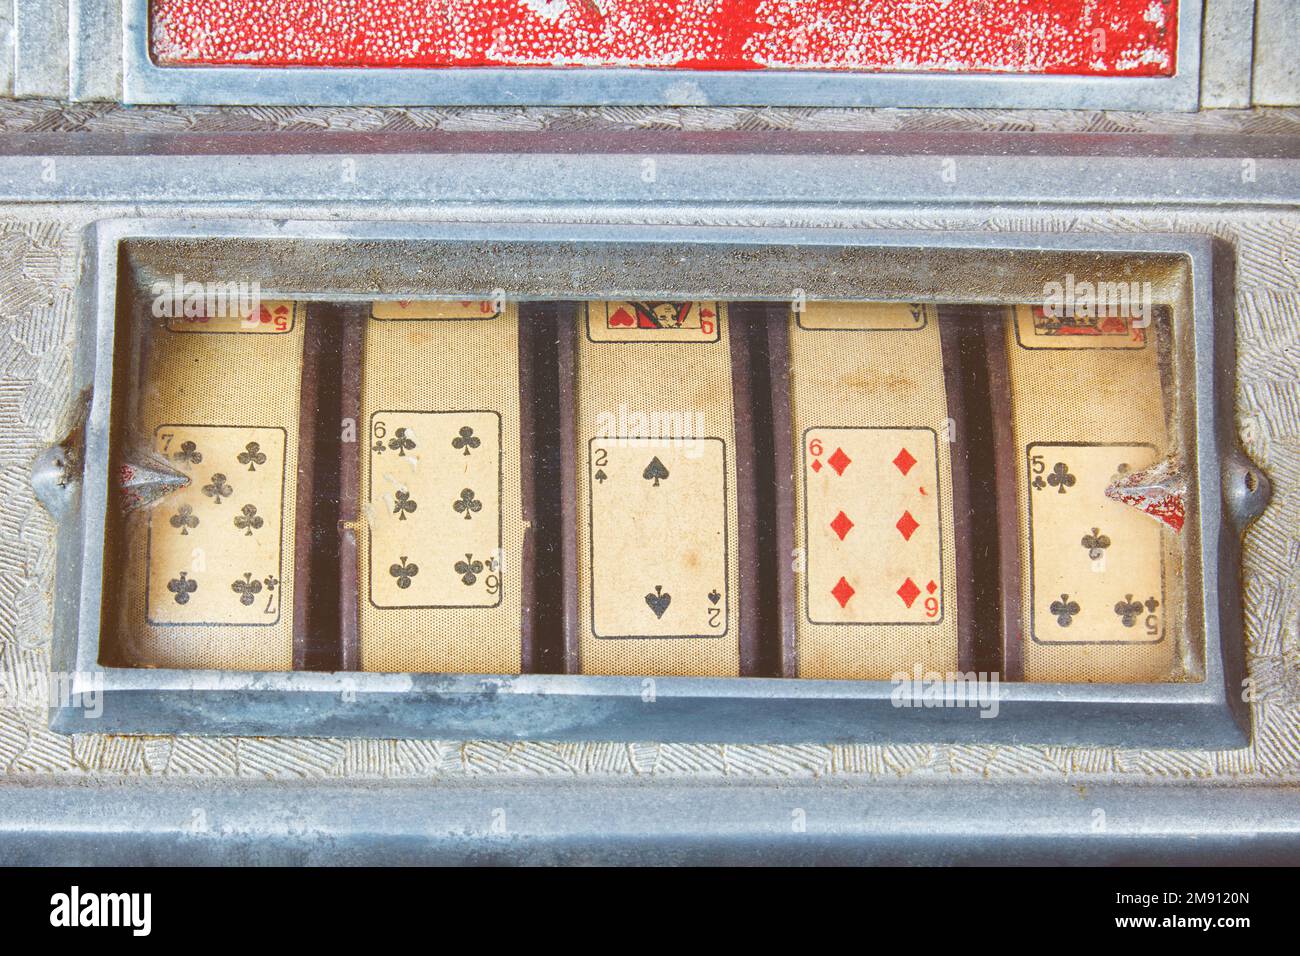 Image de style rétro d'un gros plan d'une machine à sous vintage avec des cartes à jouer Banque D'Images